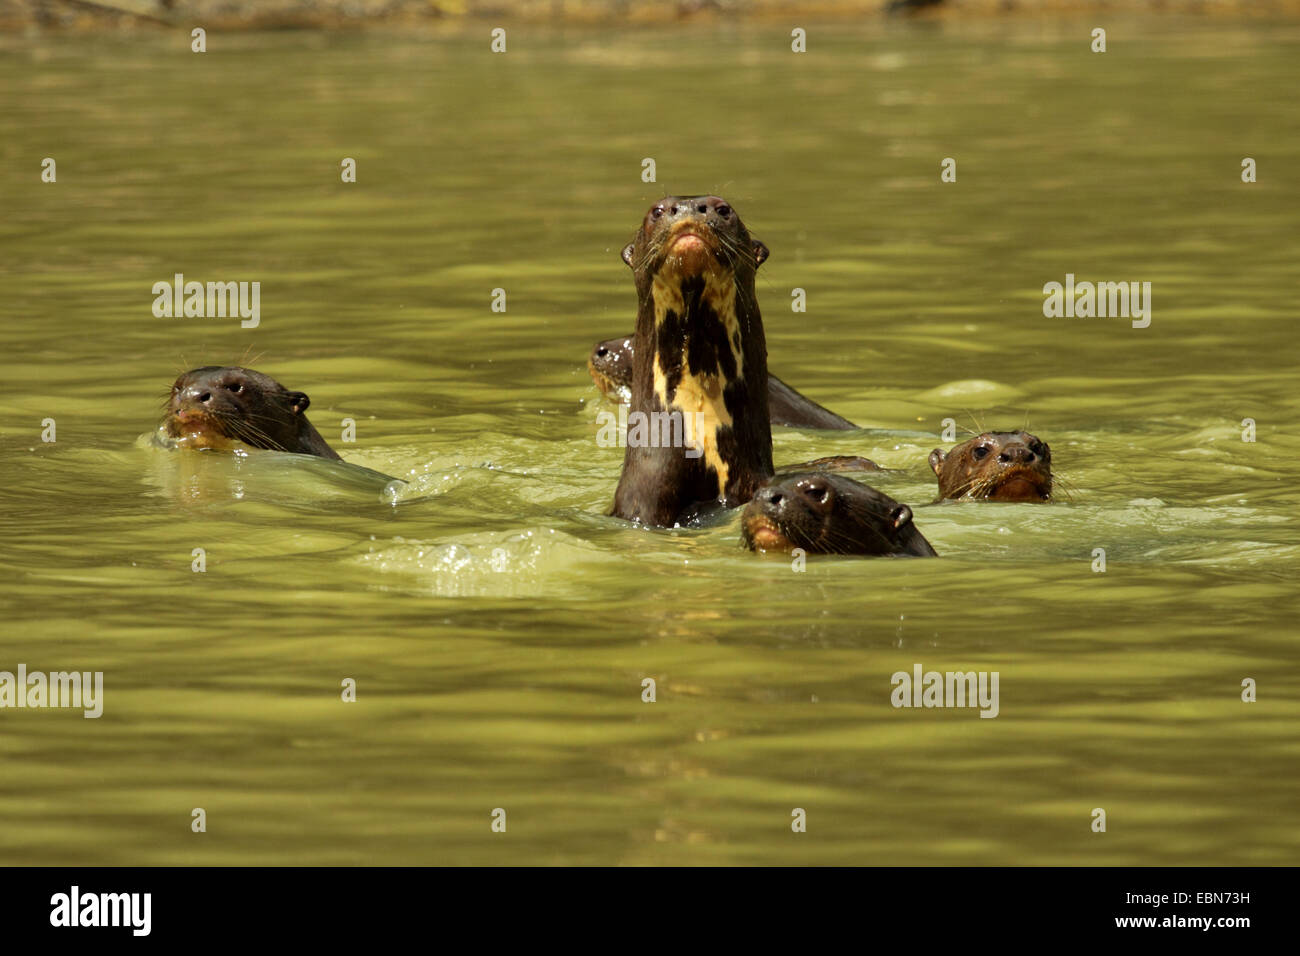 Nutria gigante (Pteronura brasiliensis), familia de animales que nadan juntos en el agua, de Brasil, Mato Grosso, el Pantanal, río Cuiaba Foto de stock